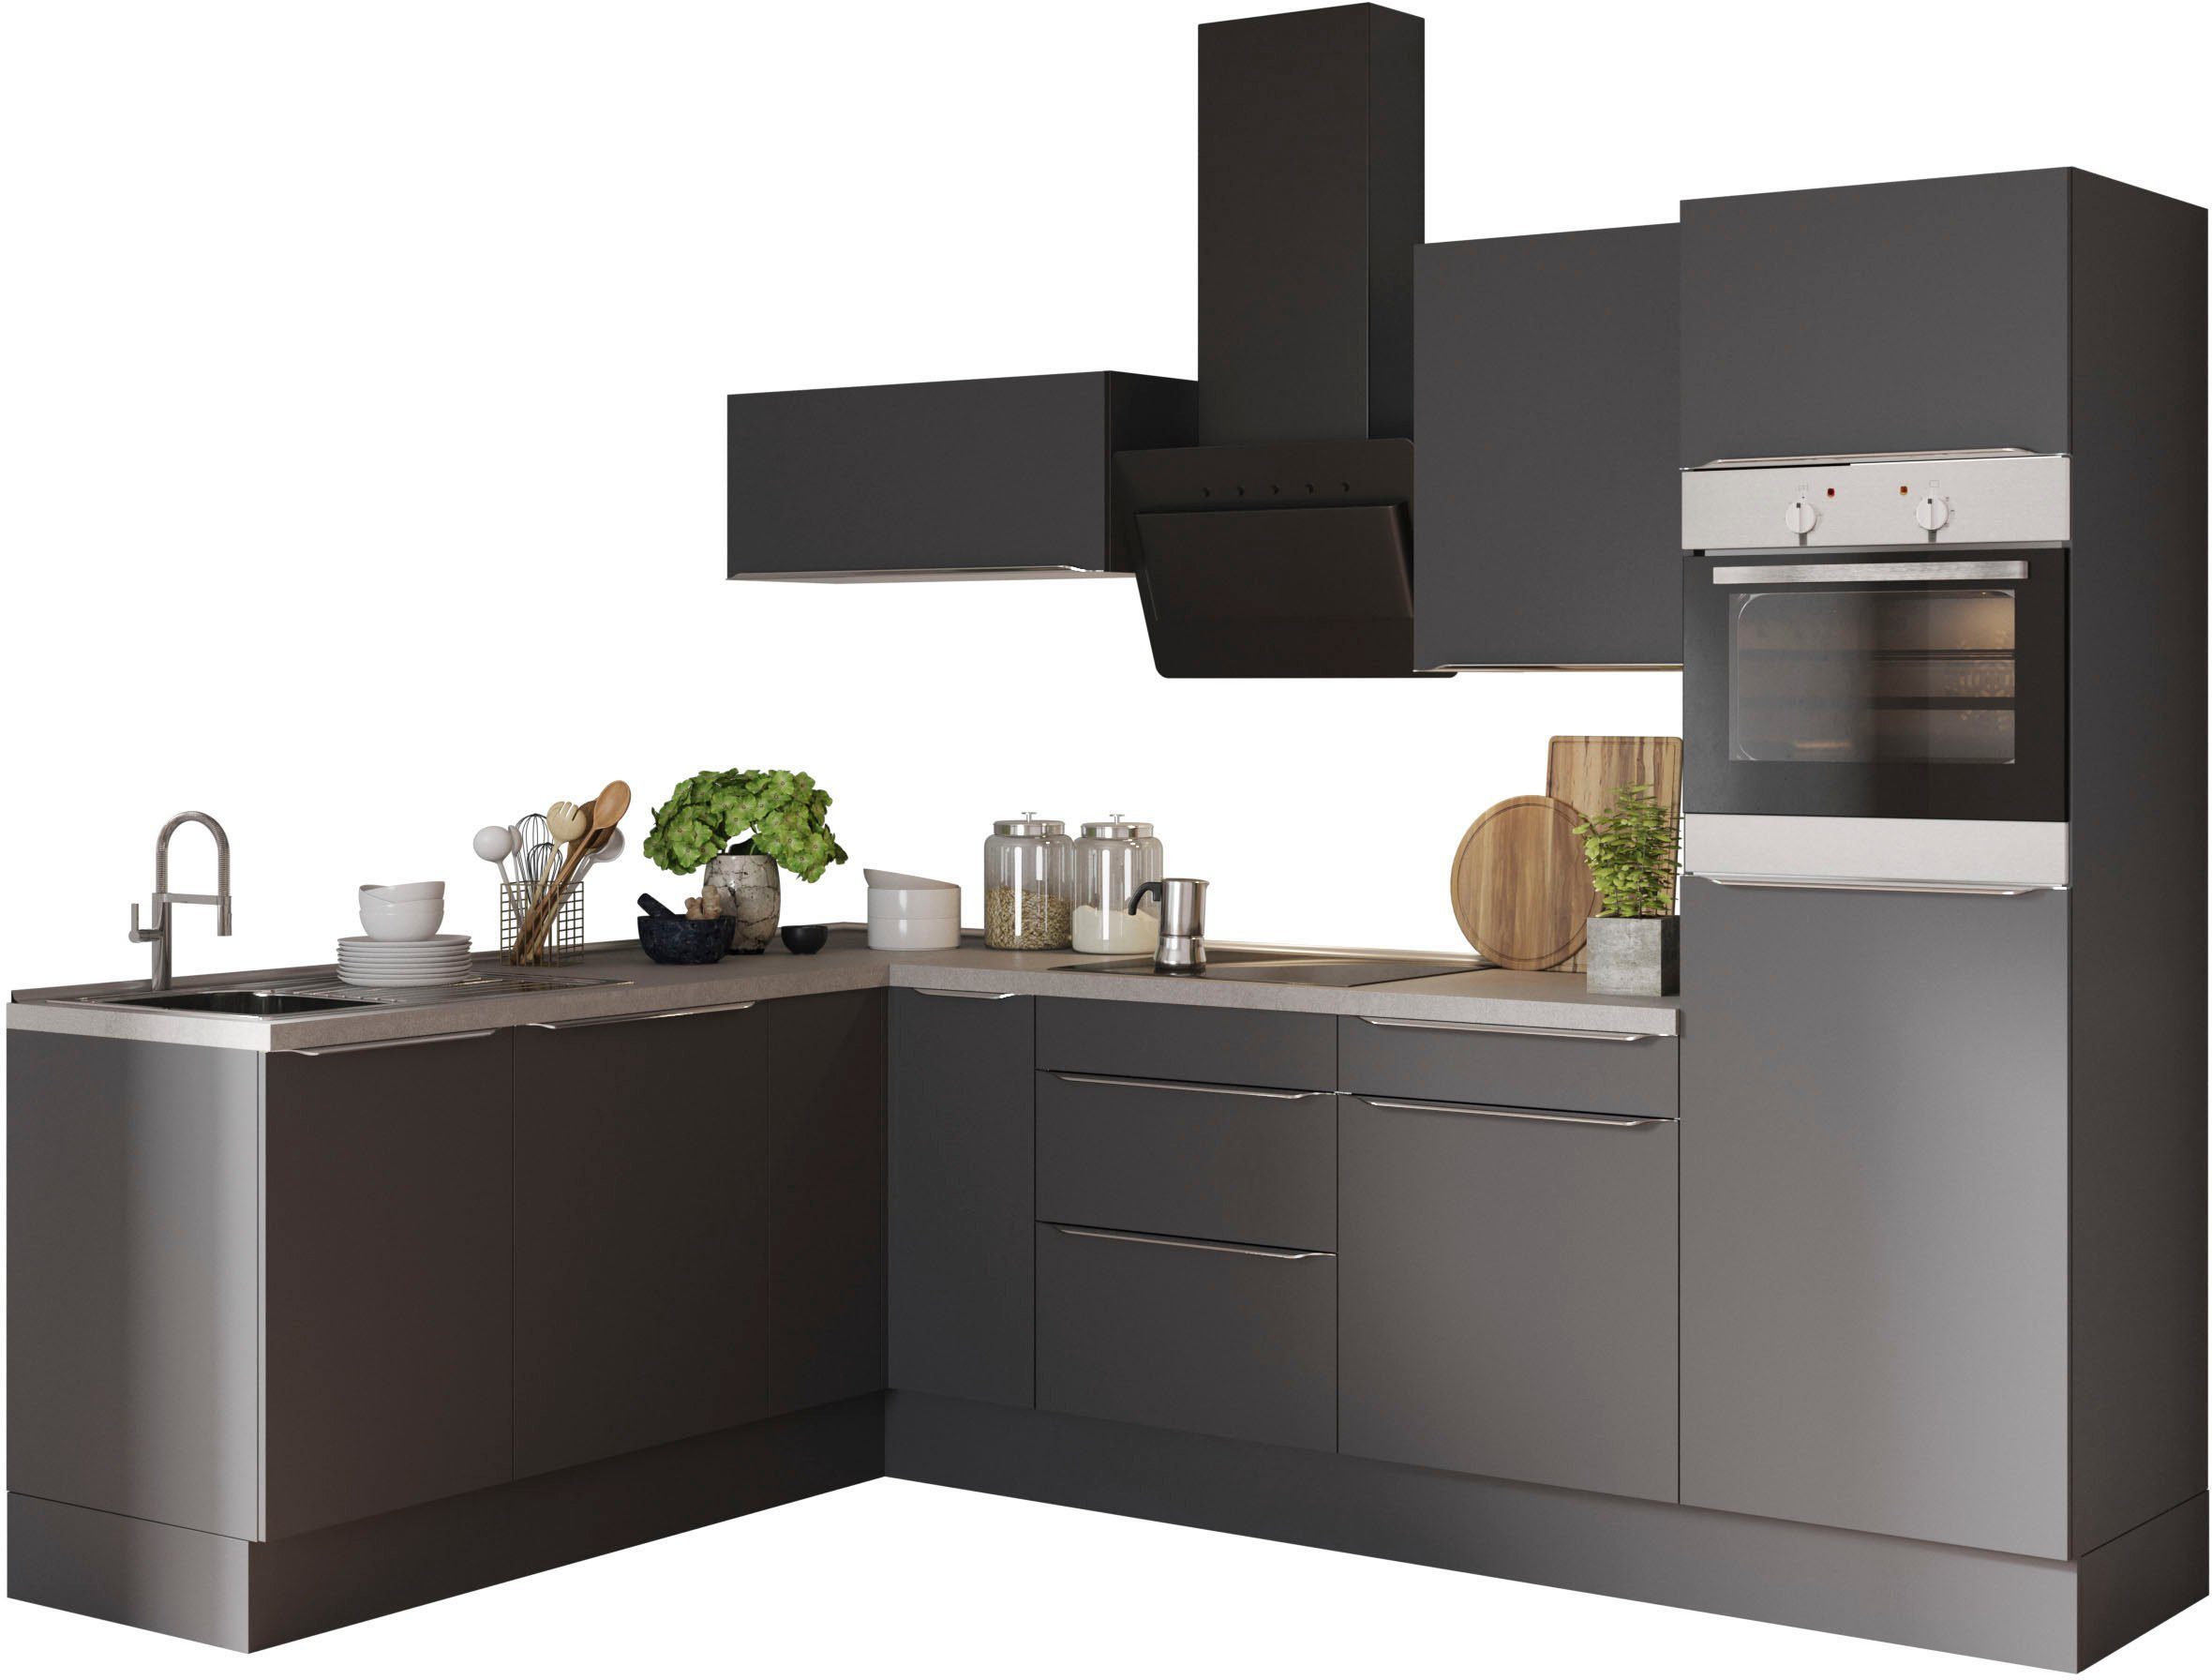 OPTIFIT Winkelküche Aken, mit E-Geräten, Stellbreite 200 x 270 cm, Stabile  Metallauszüge bis 25 kg belastbar